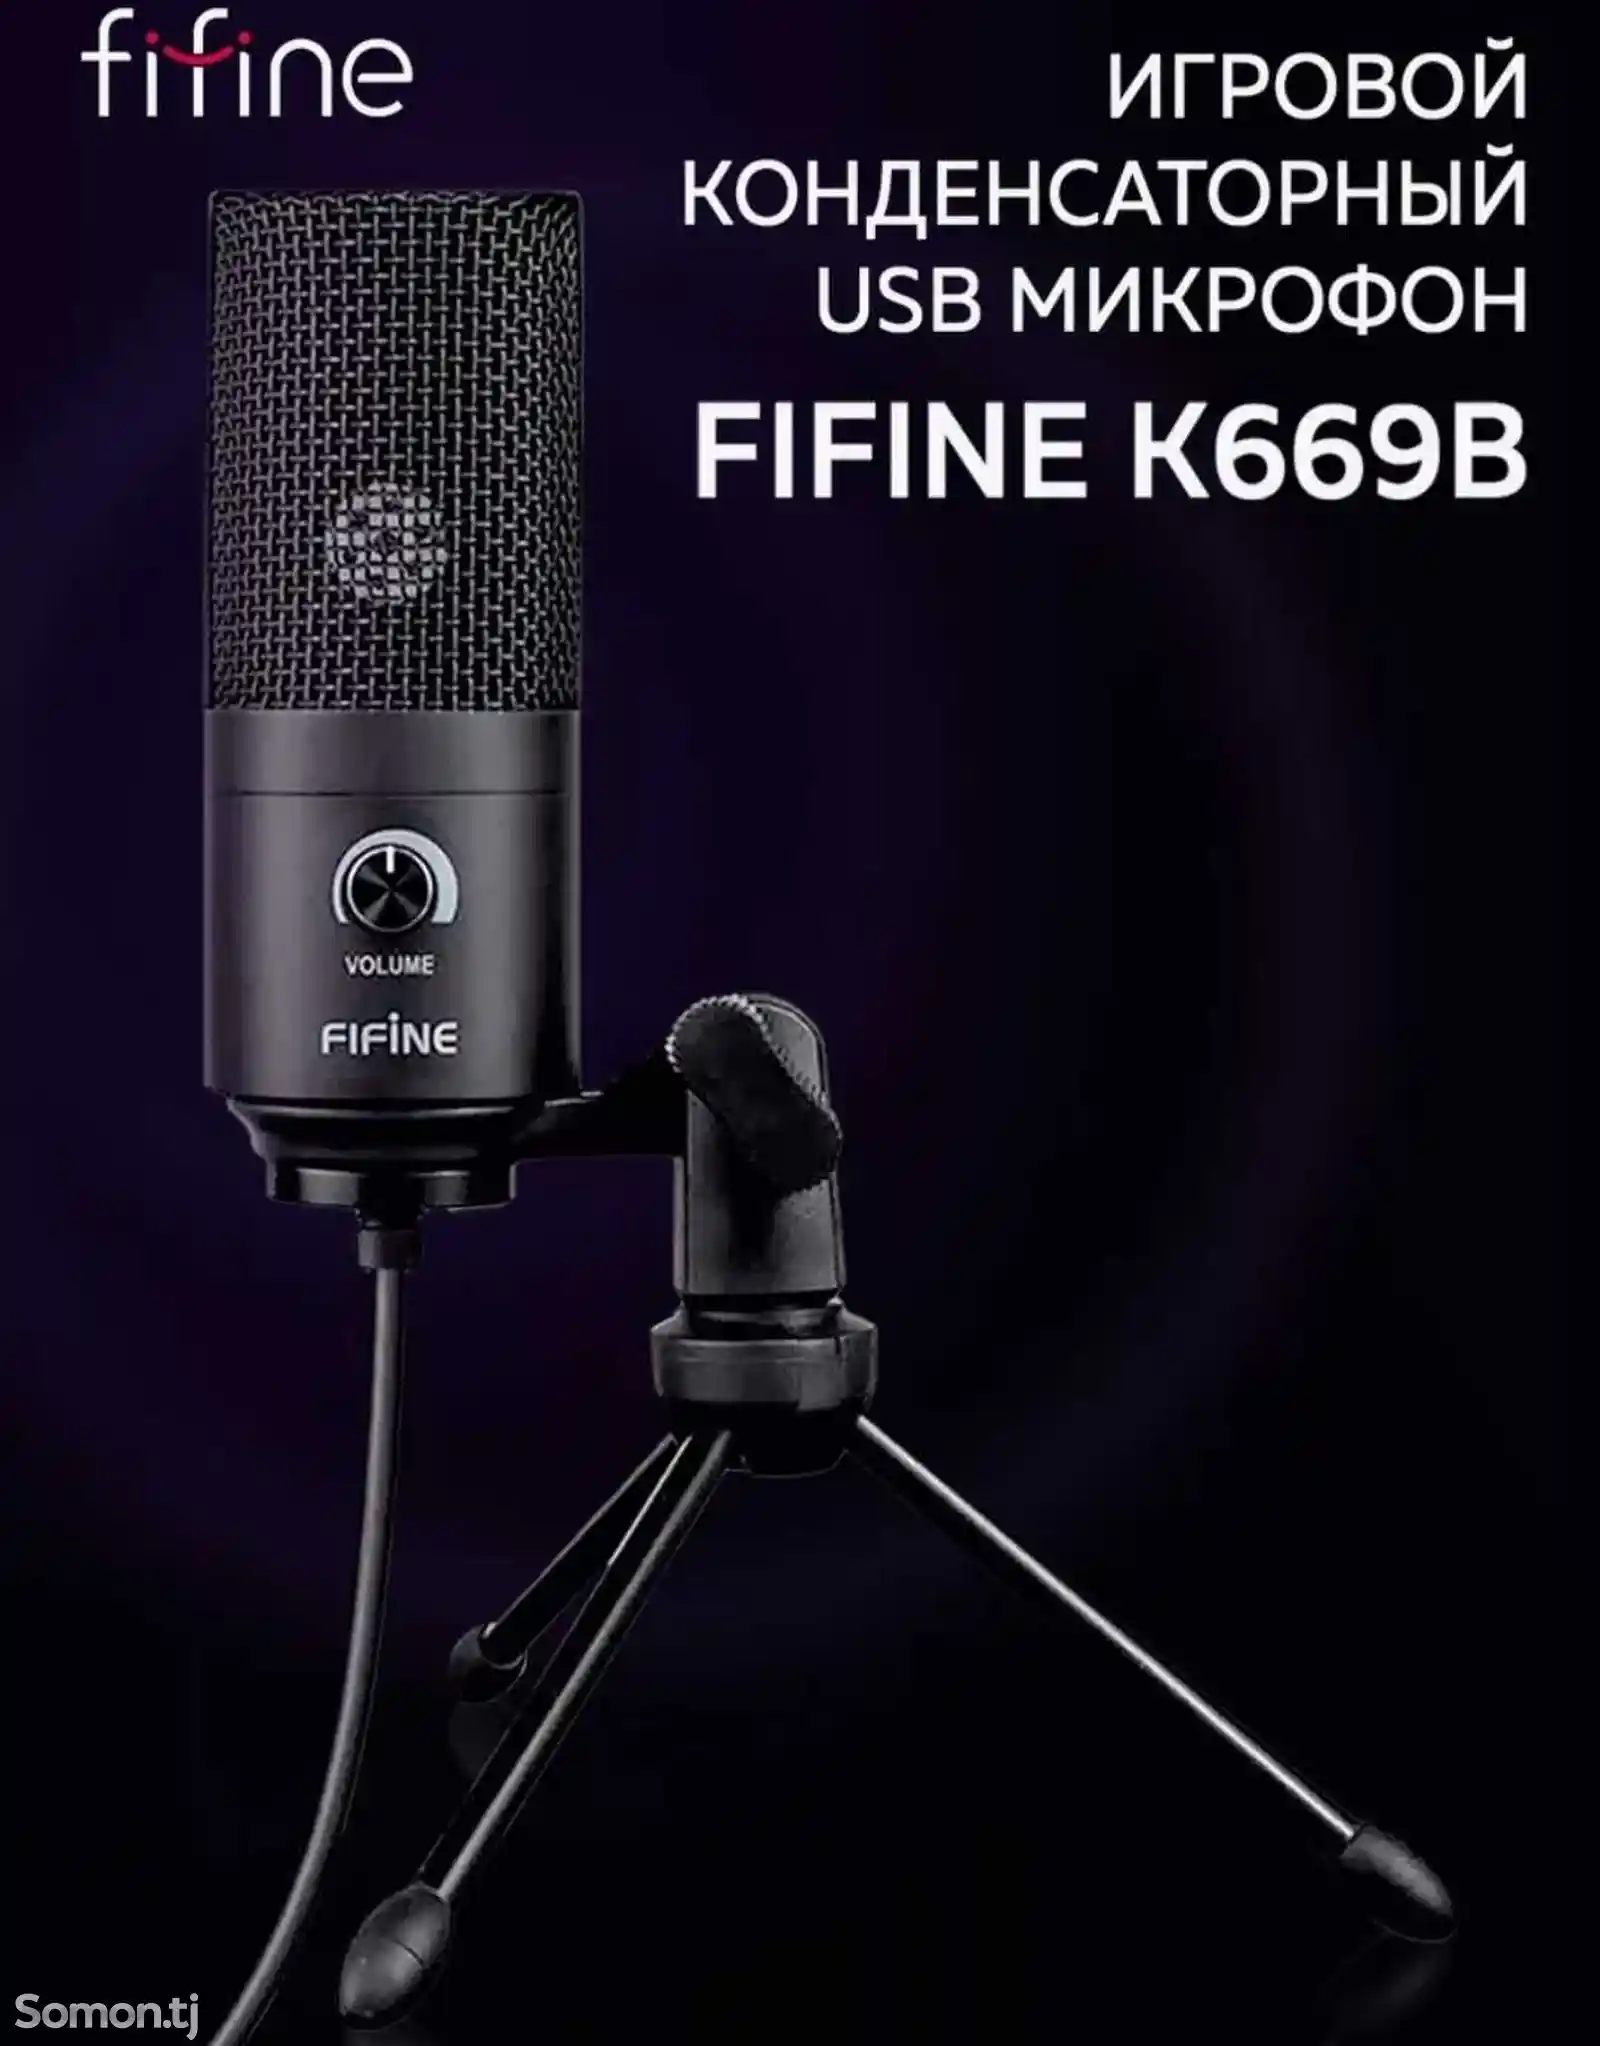 Микрофон Fifine K669B-1